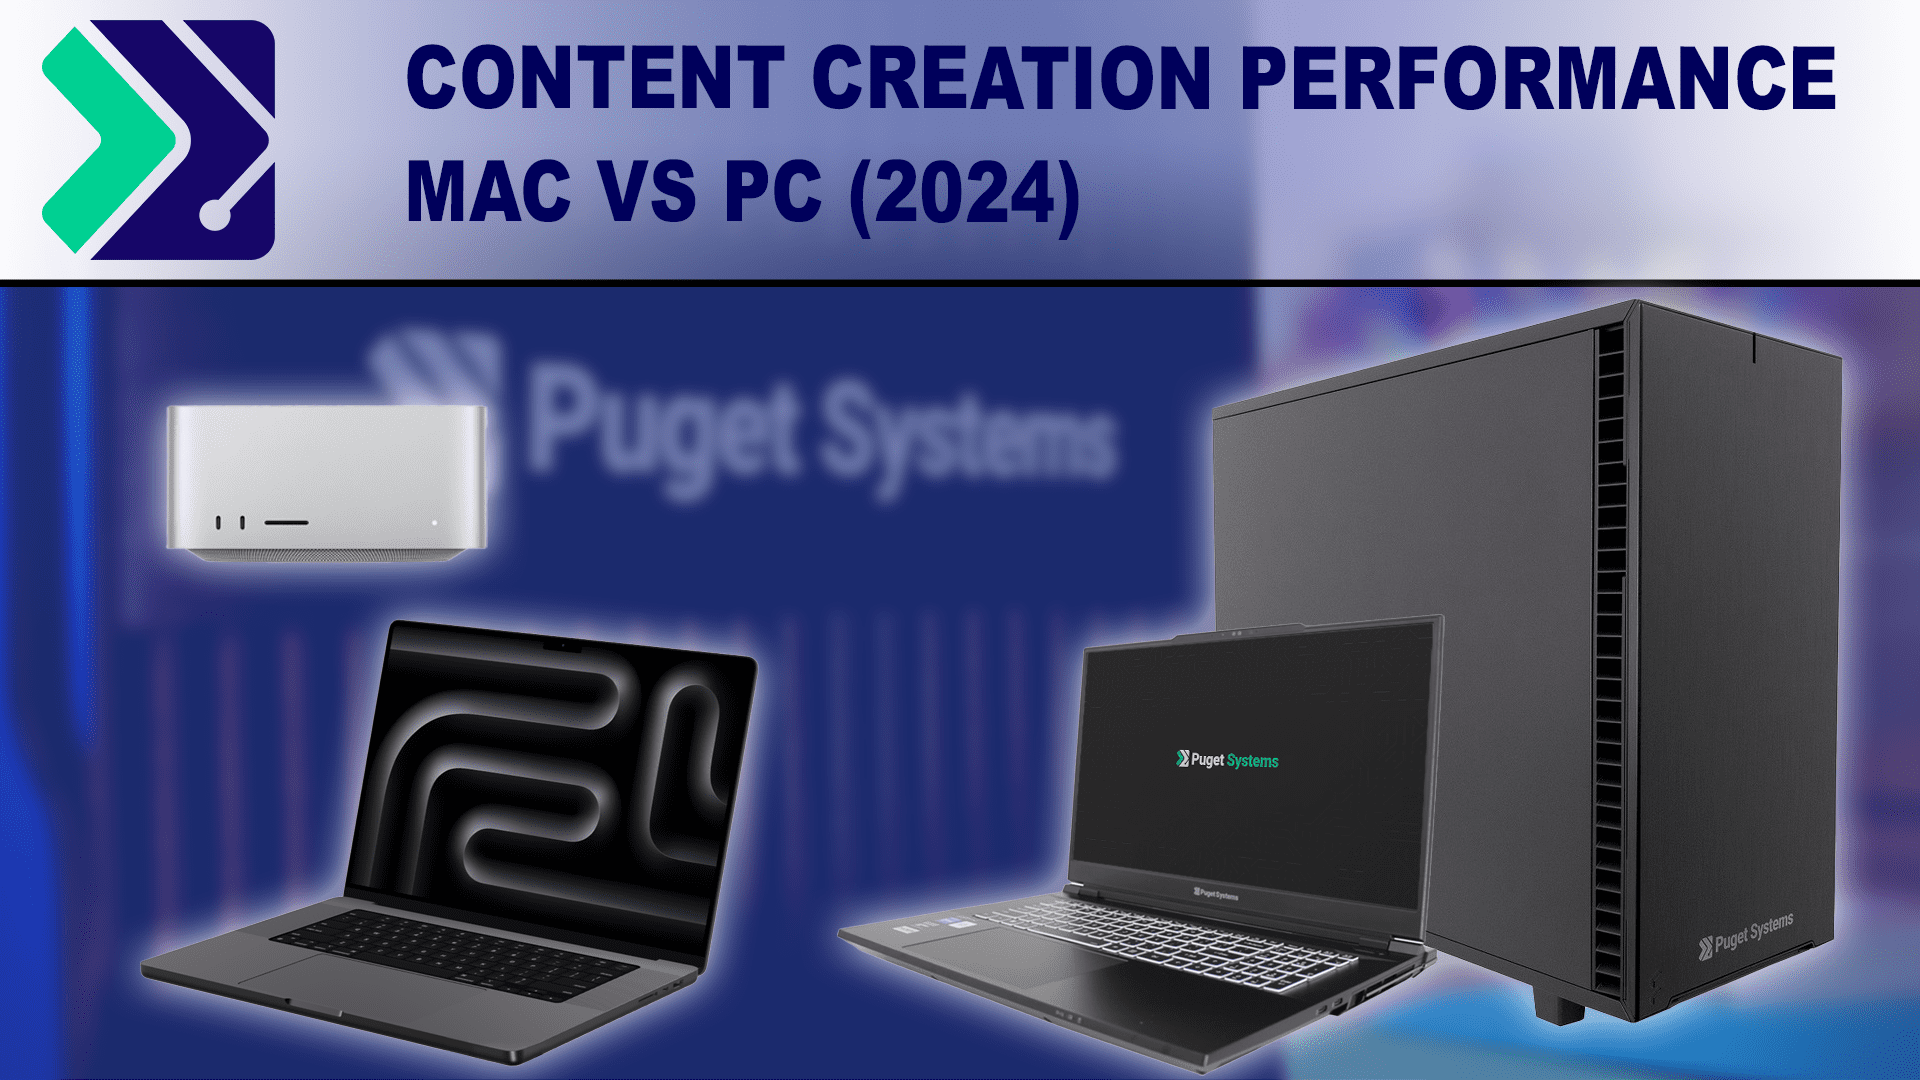 Mac vs PC 2024